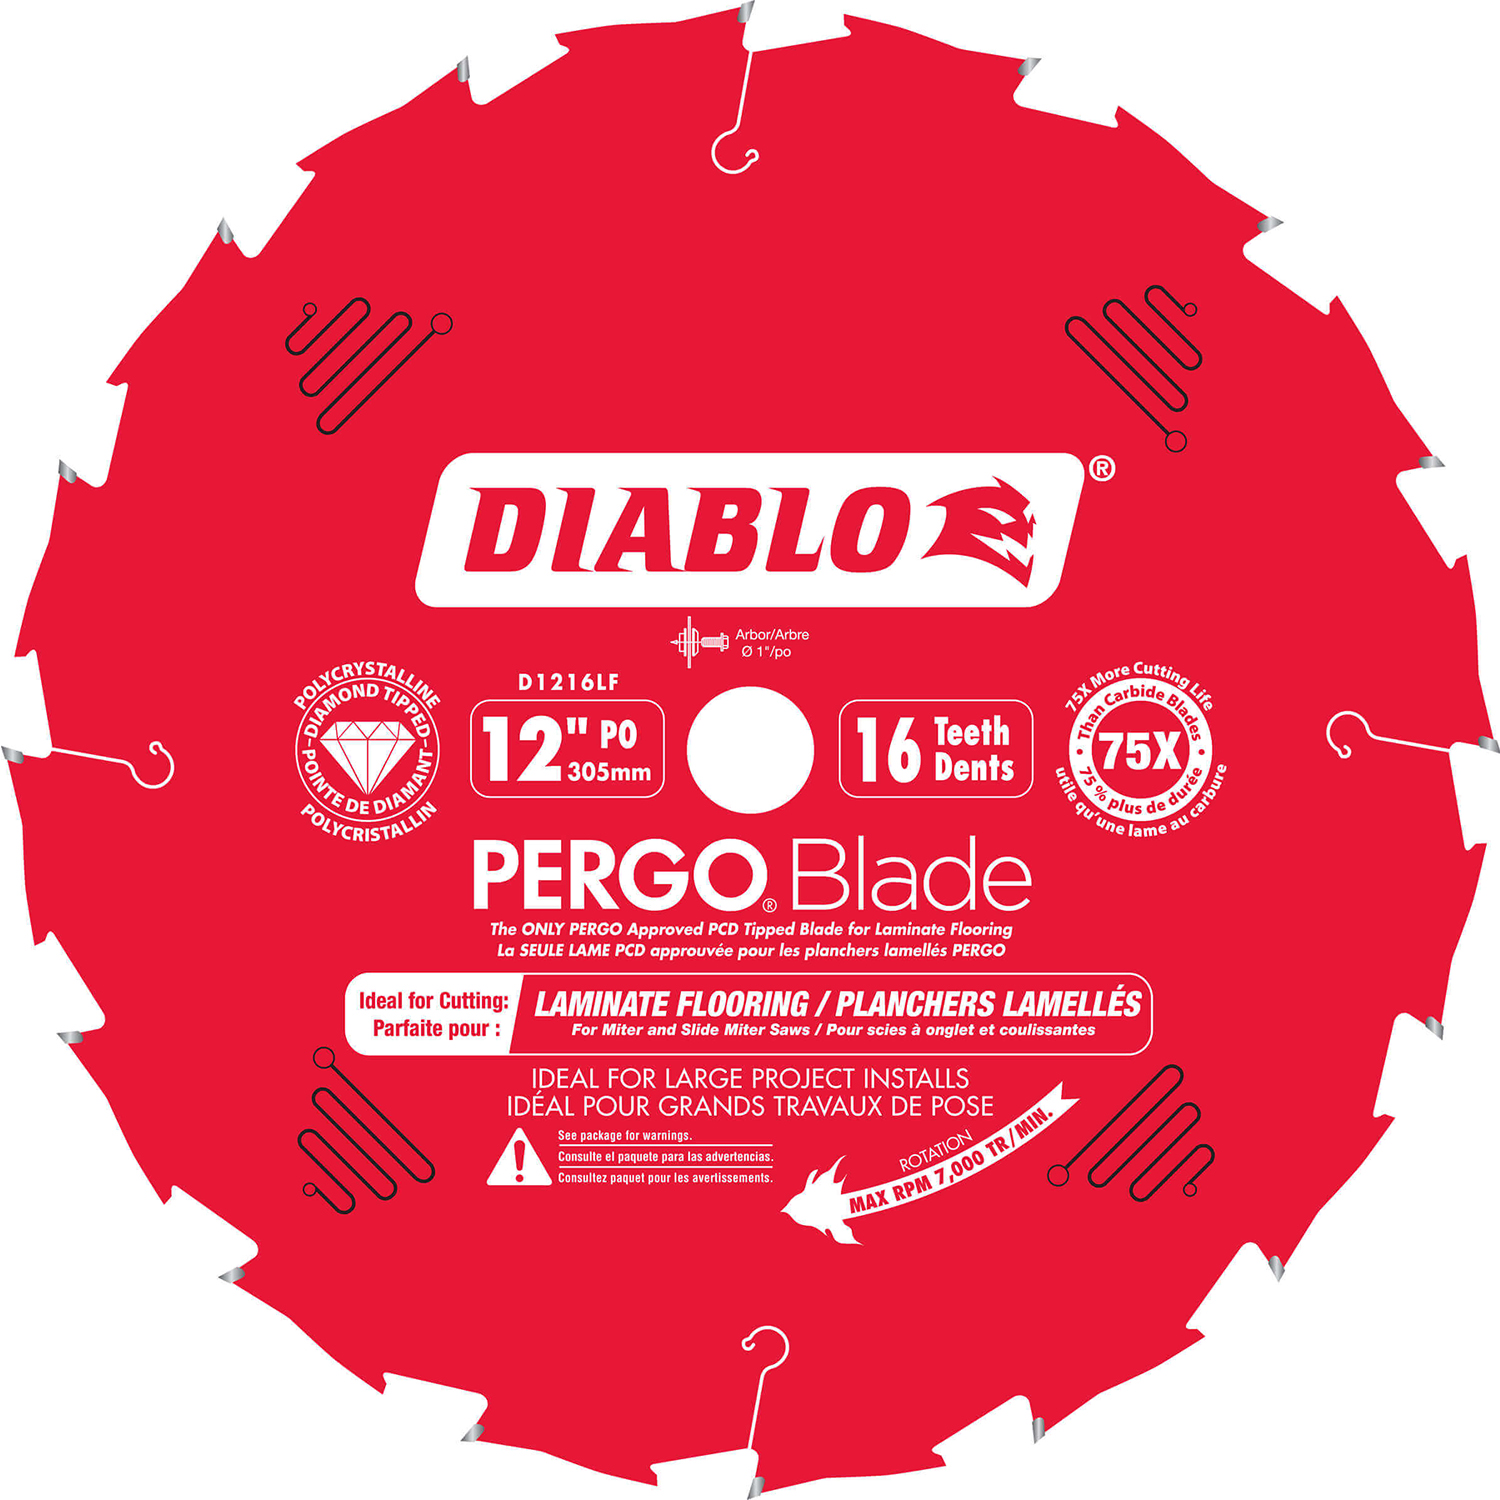 Diablo PCD Tipped Chop Saw Blade 12 x 16 Teeth - D1216LF